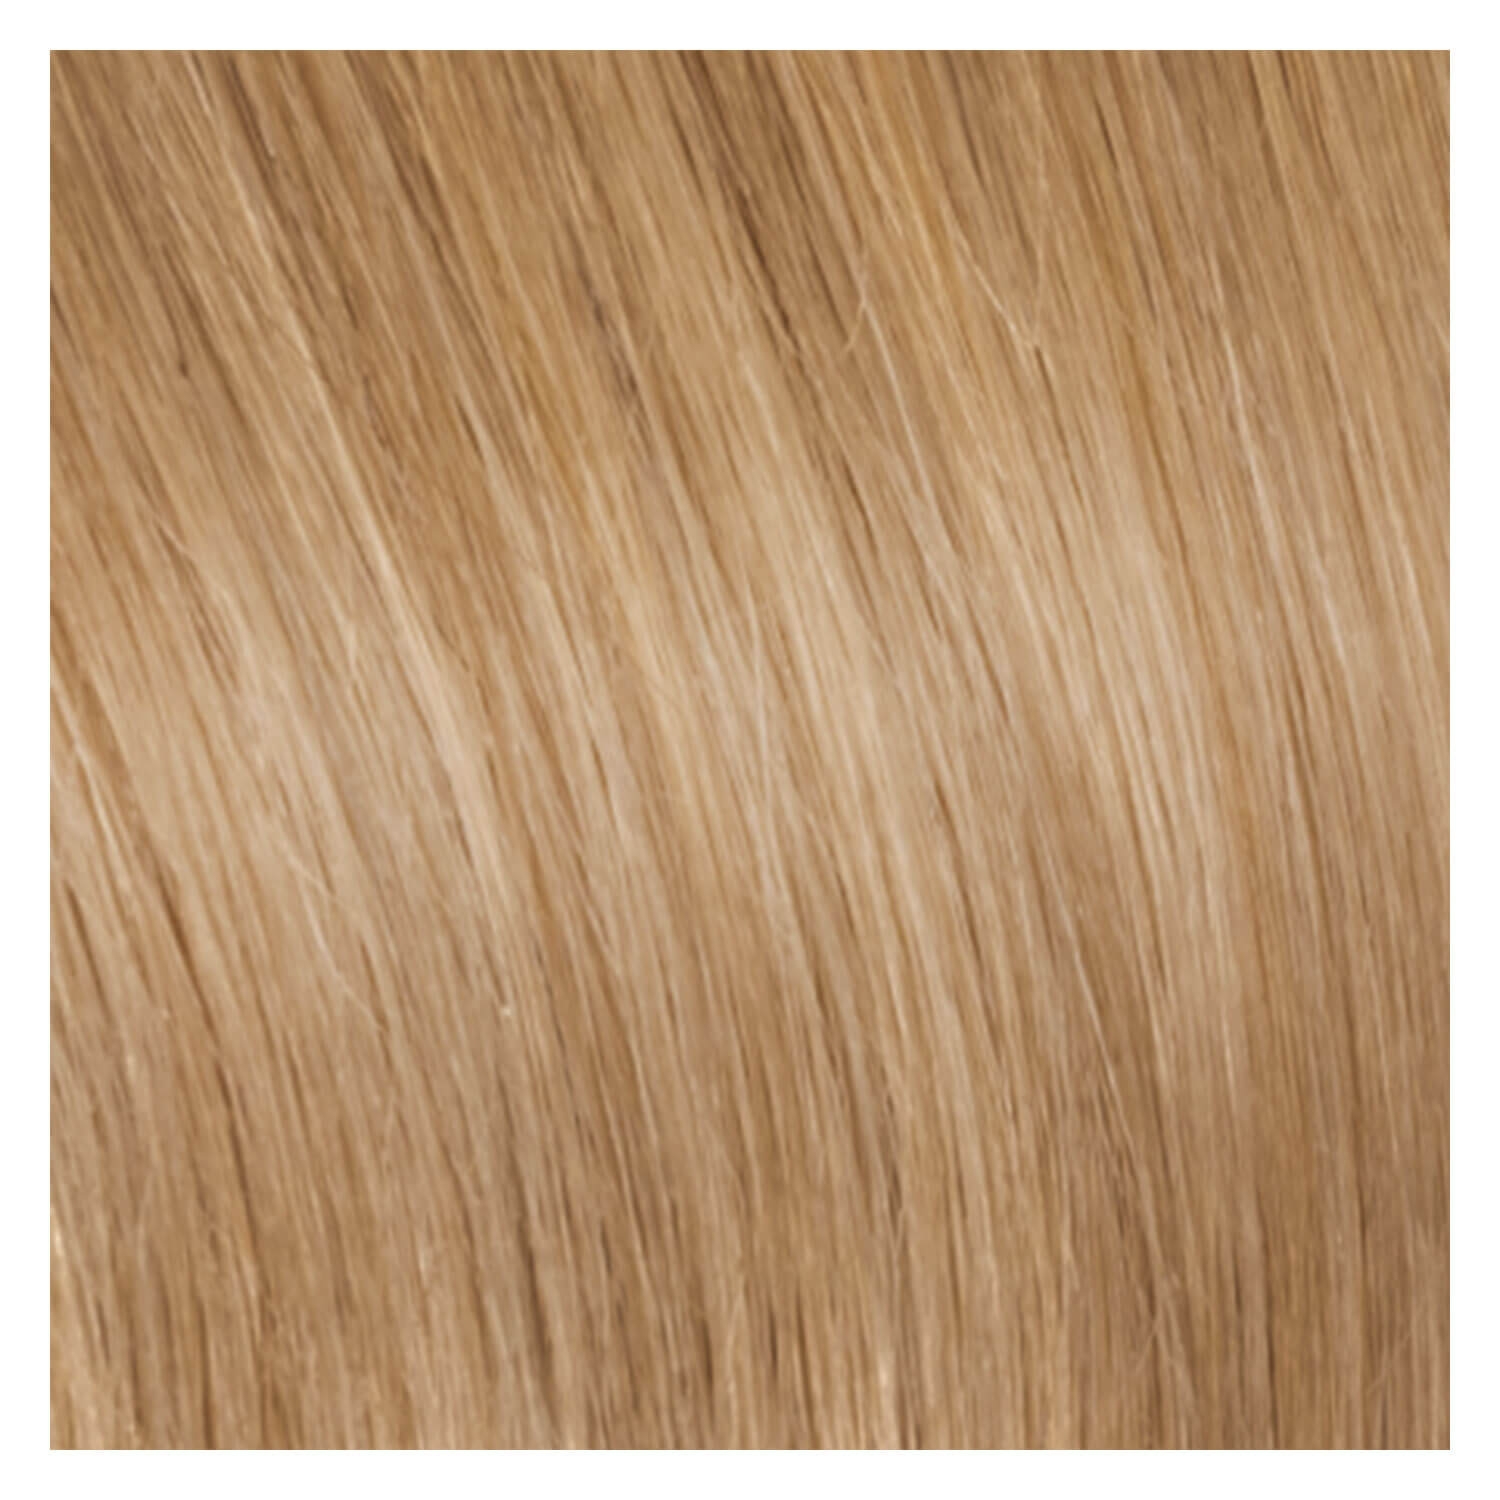 Produktbild von SHE Clip In-System Hair Extensions - 9-teiliges Set 26 Honigblond 50/55cm